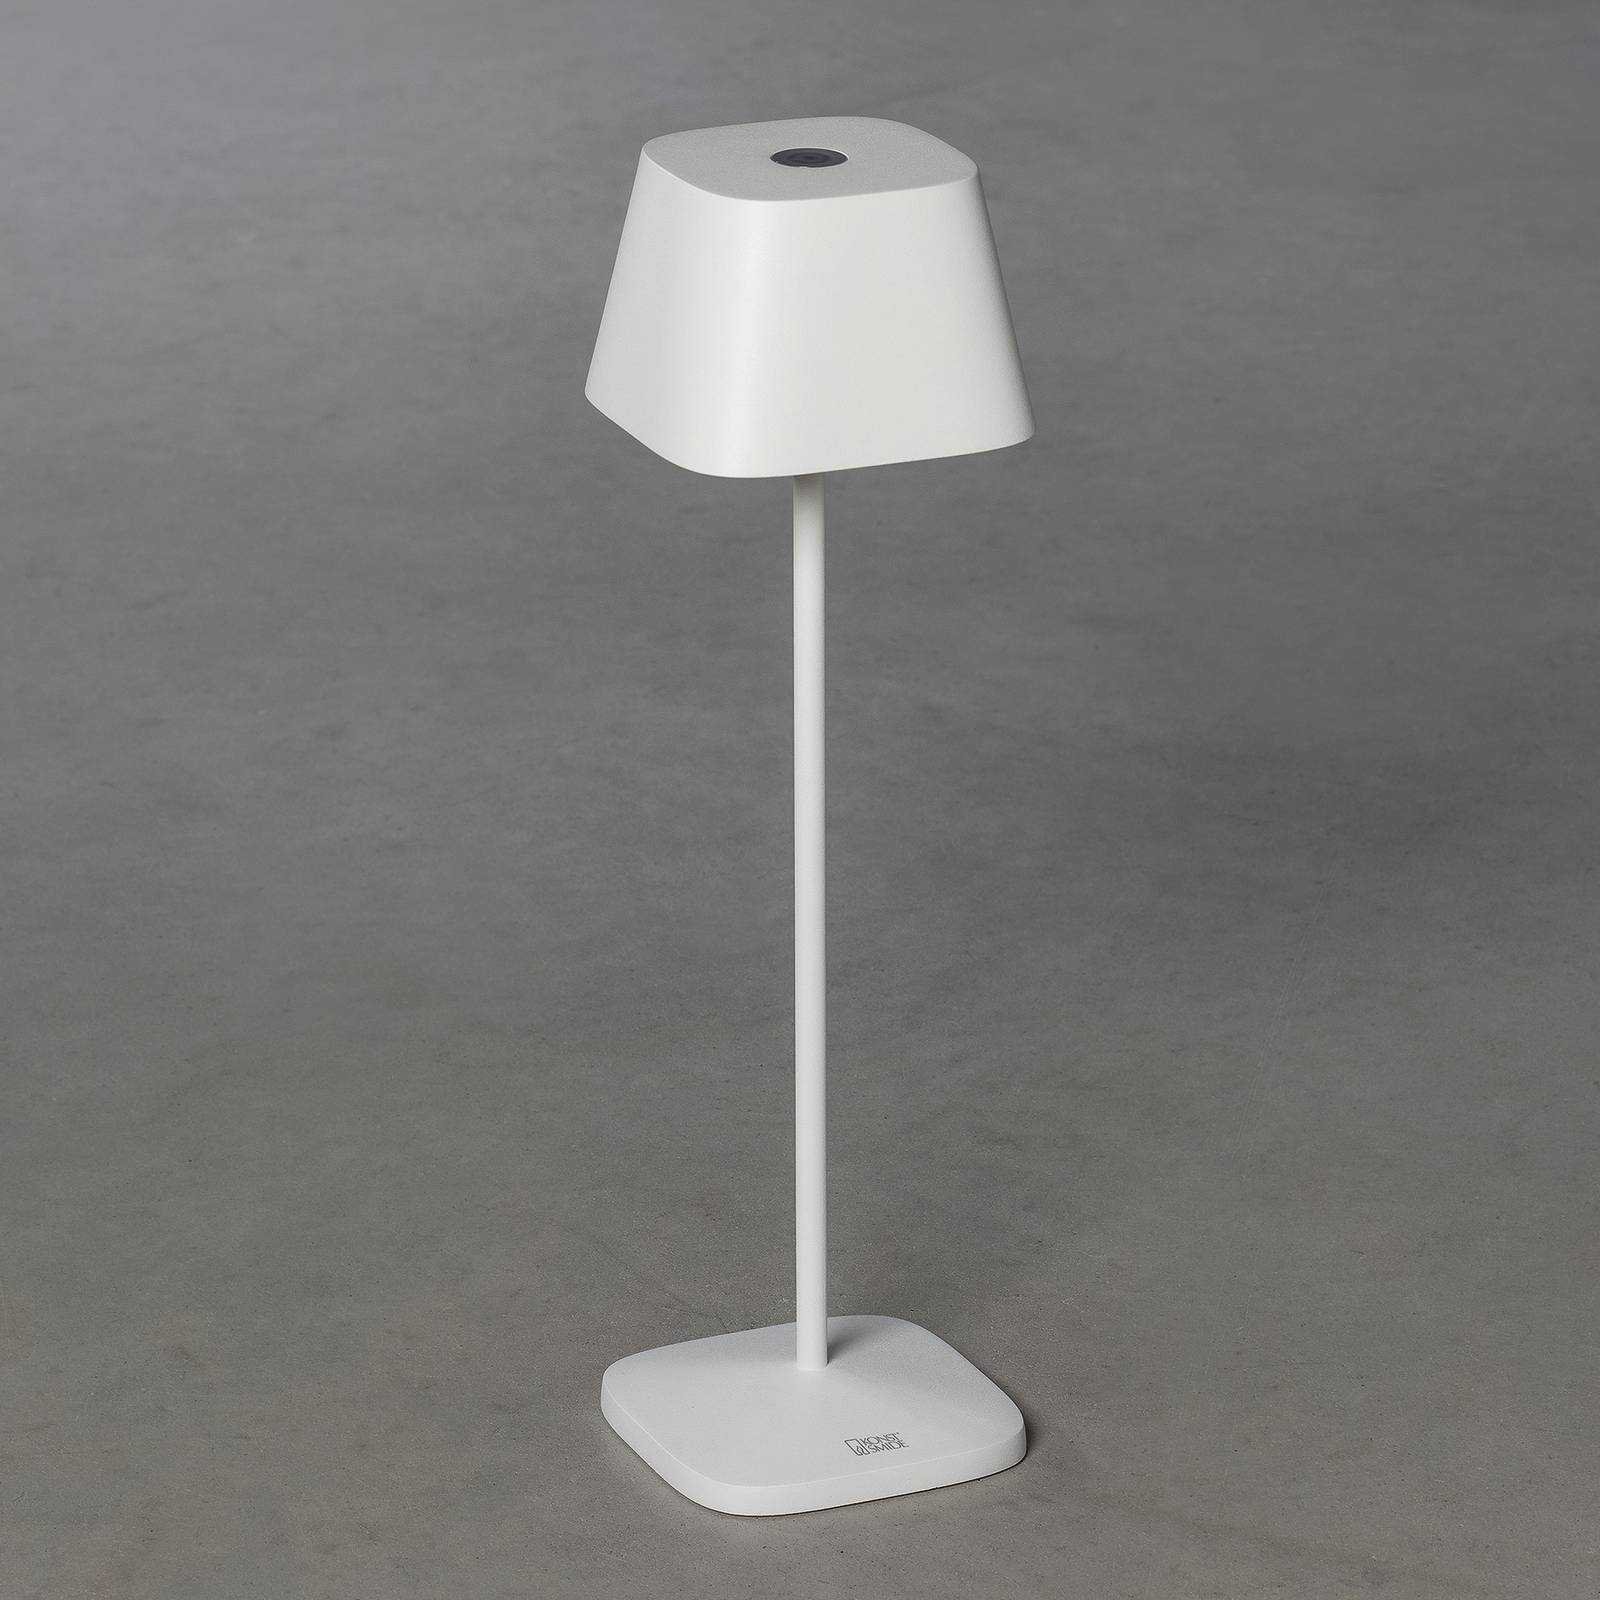 Konstsmide LED stolní lampa Capri venkovní, bílá